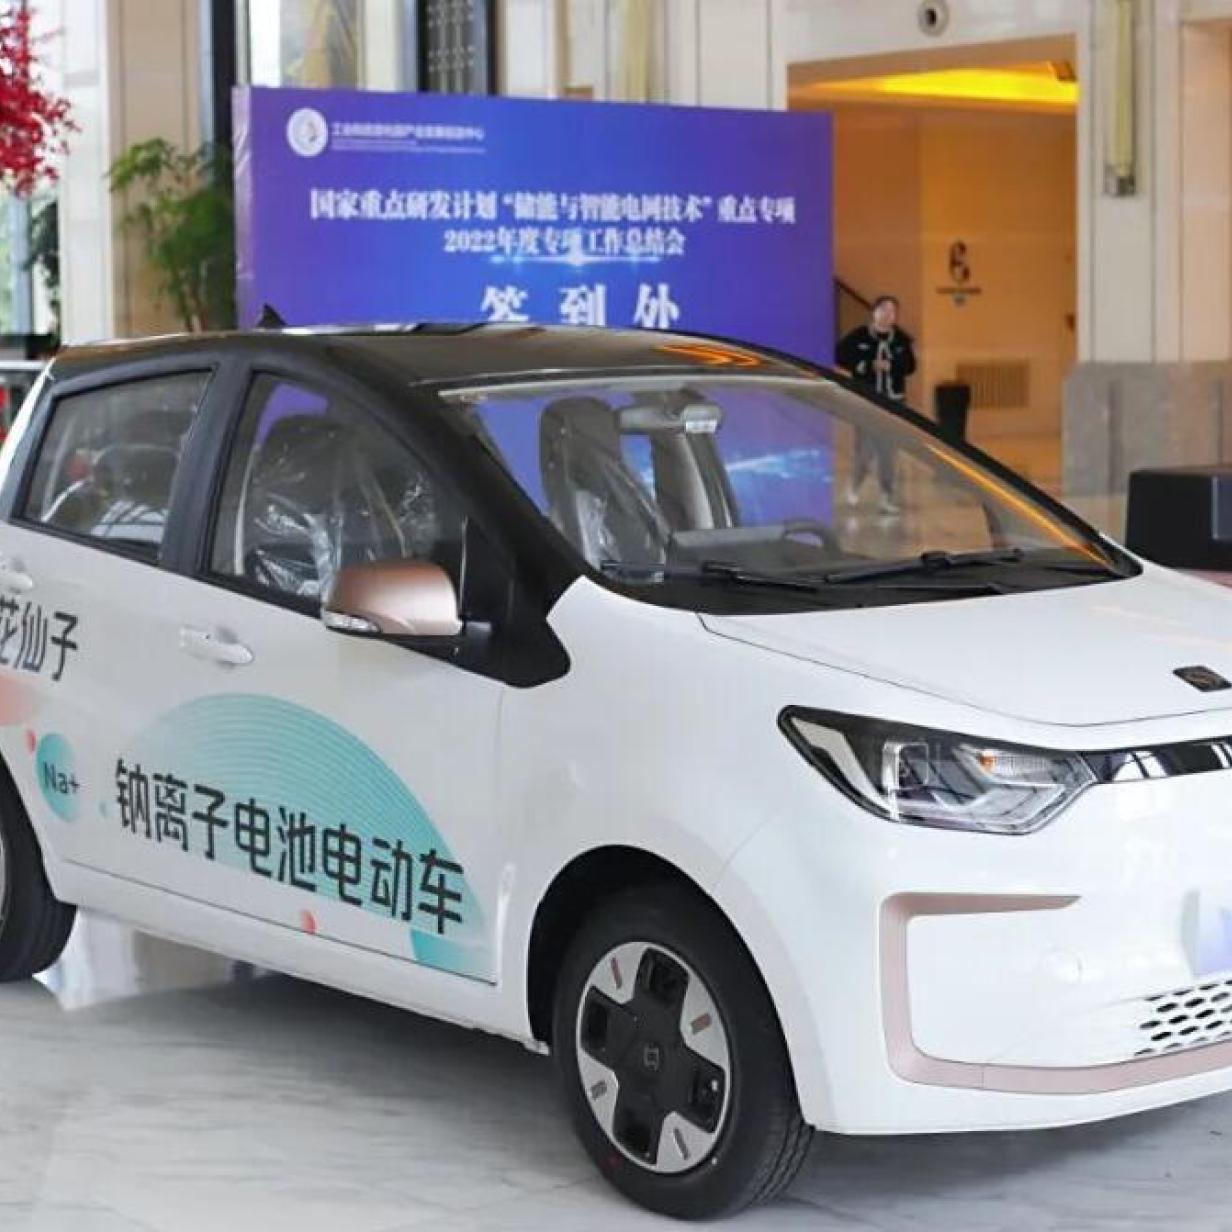 Natriumbatterie für Elektroautos: In China rollt eine Akku-Revolution los